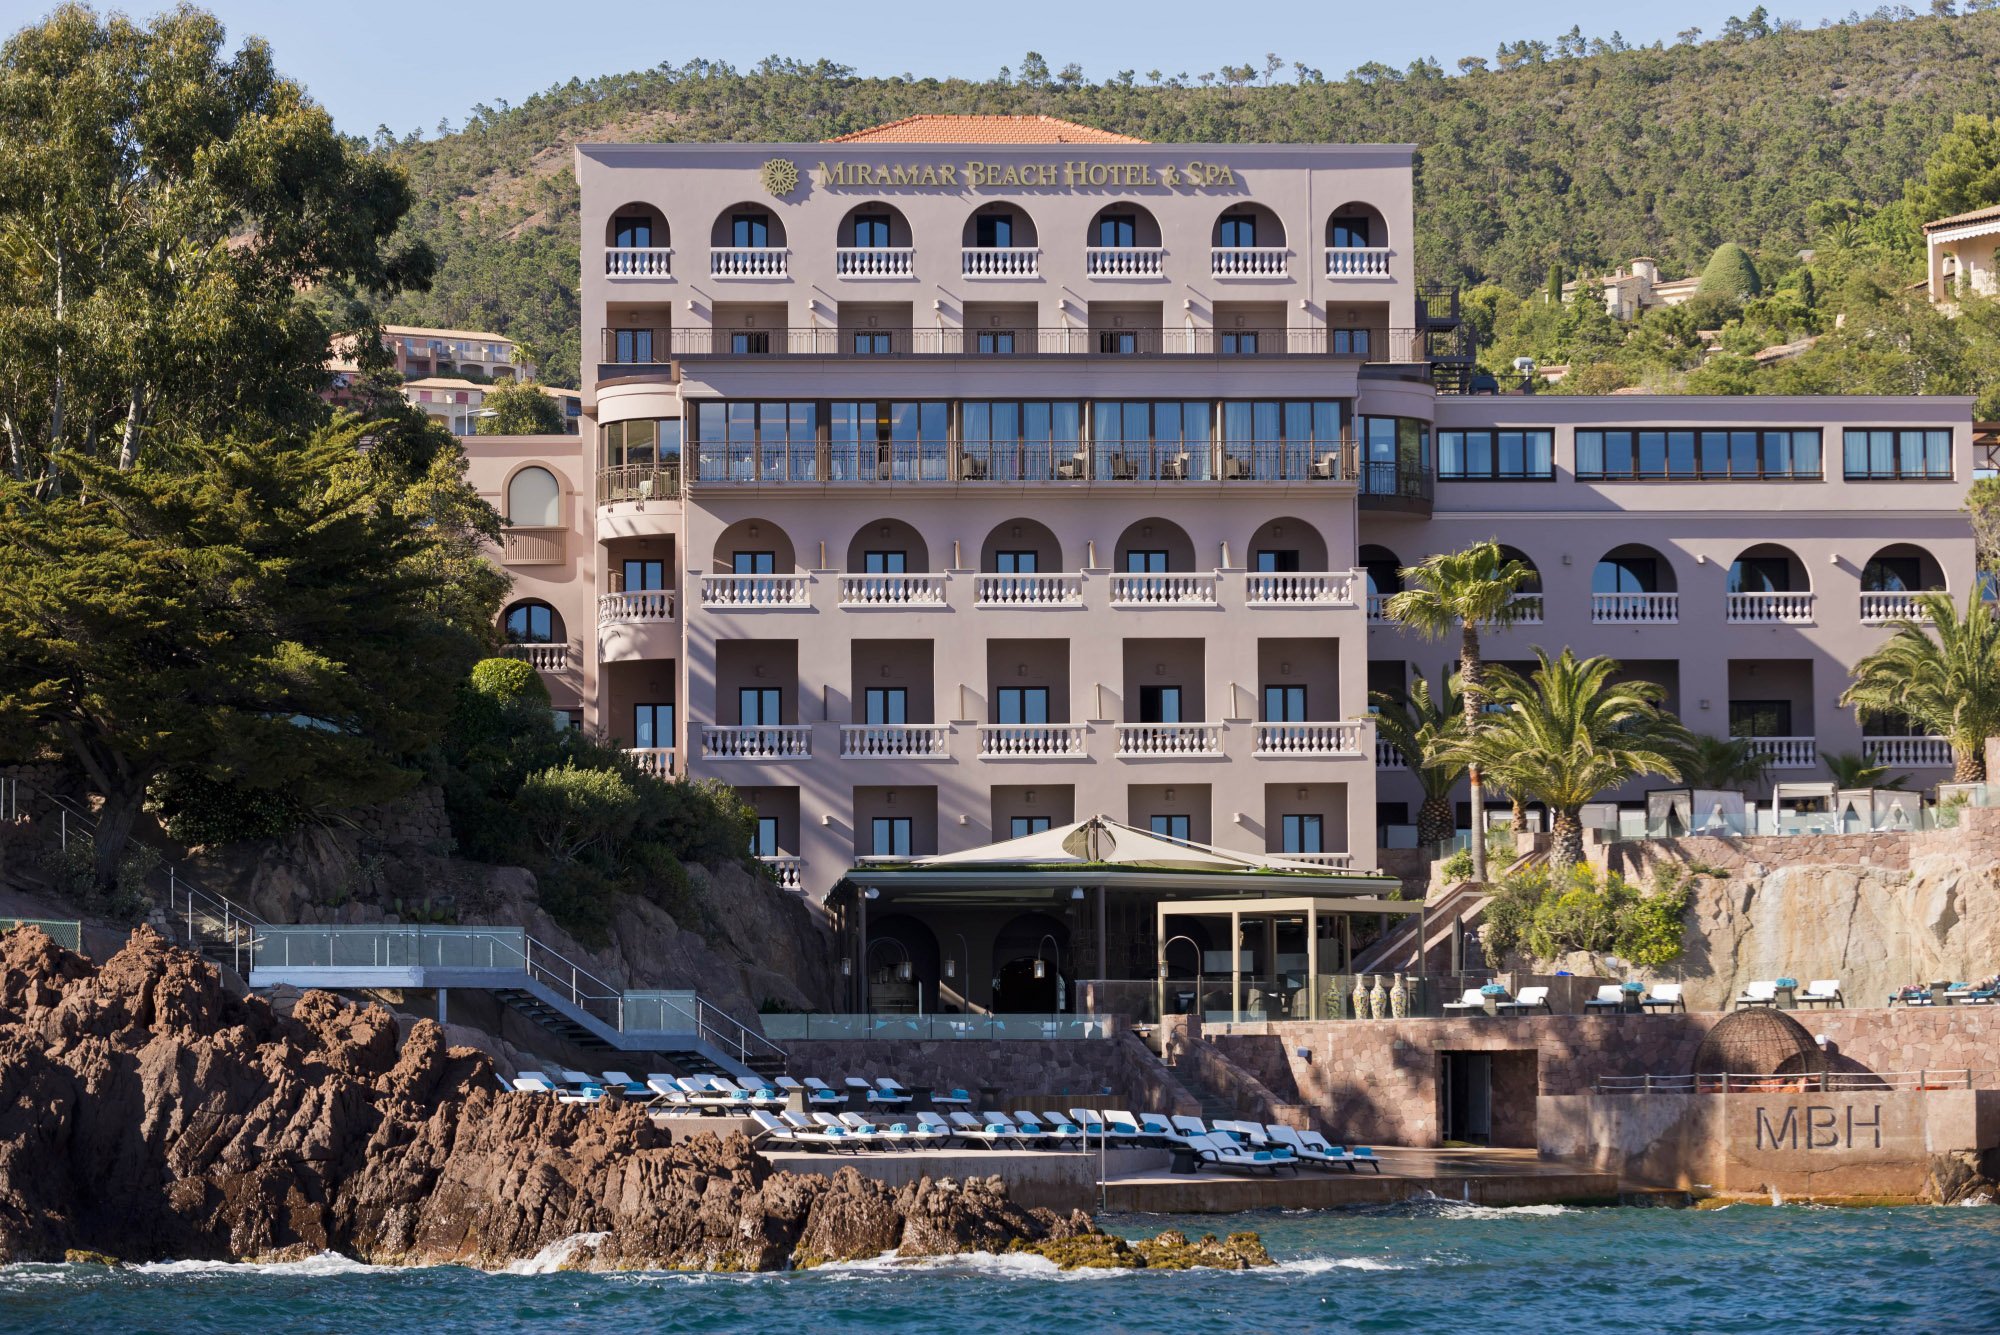 Miramar Beach Hôtel & Spa | Hôtel de luxe pour le MIPCOM